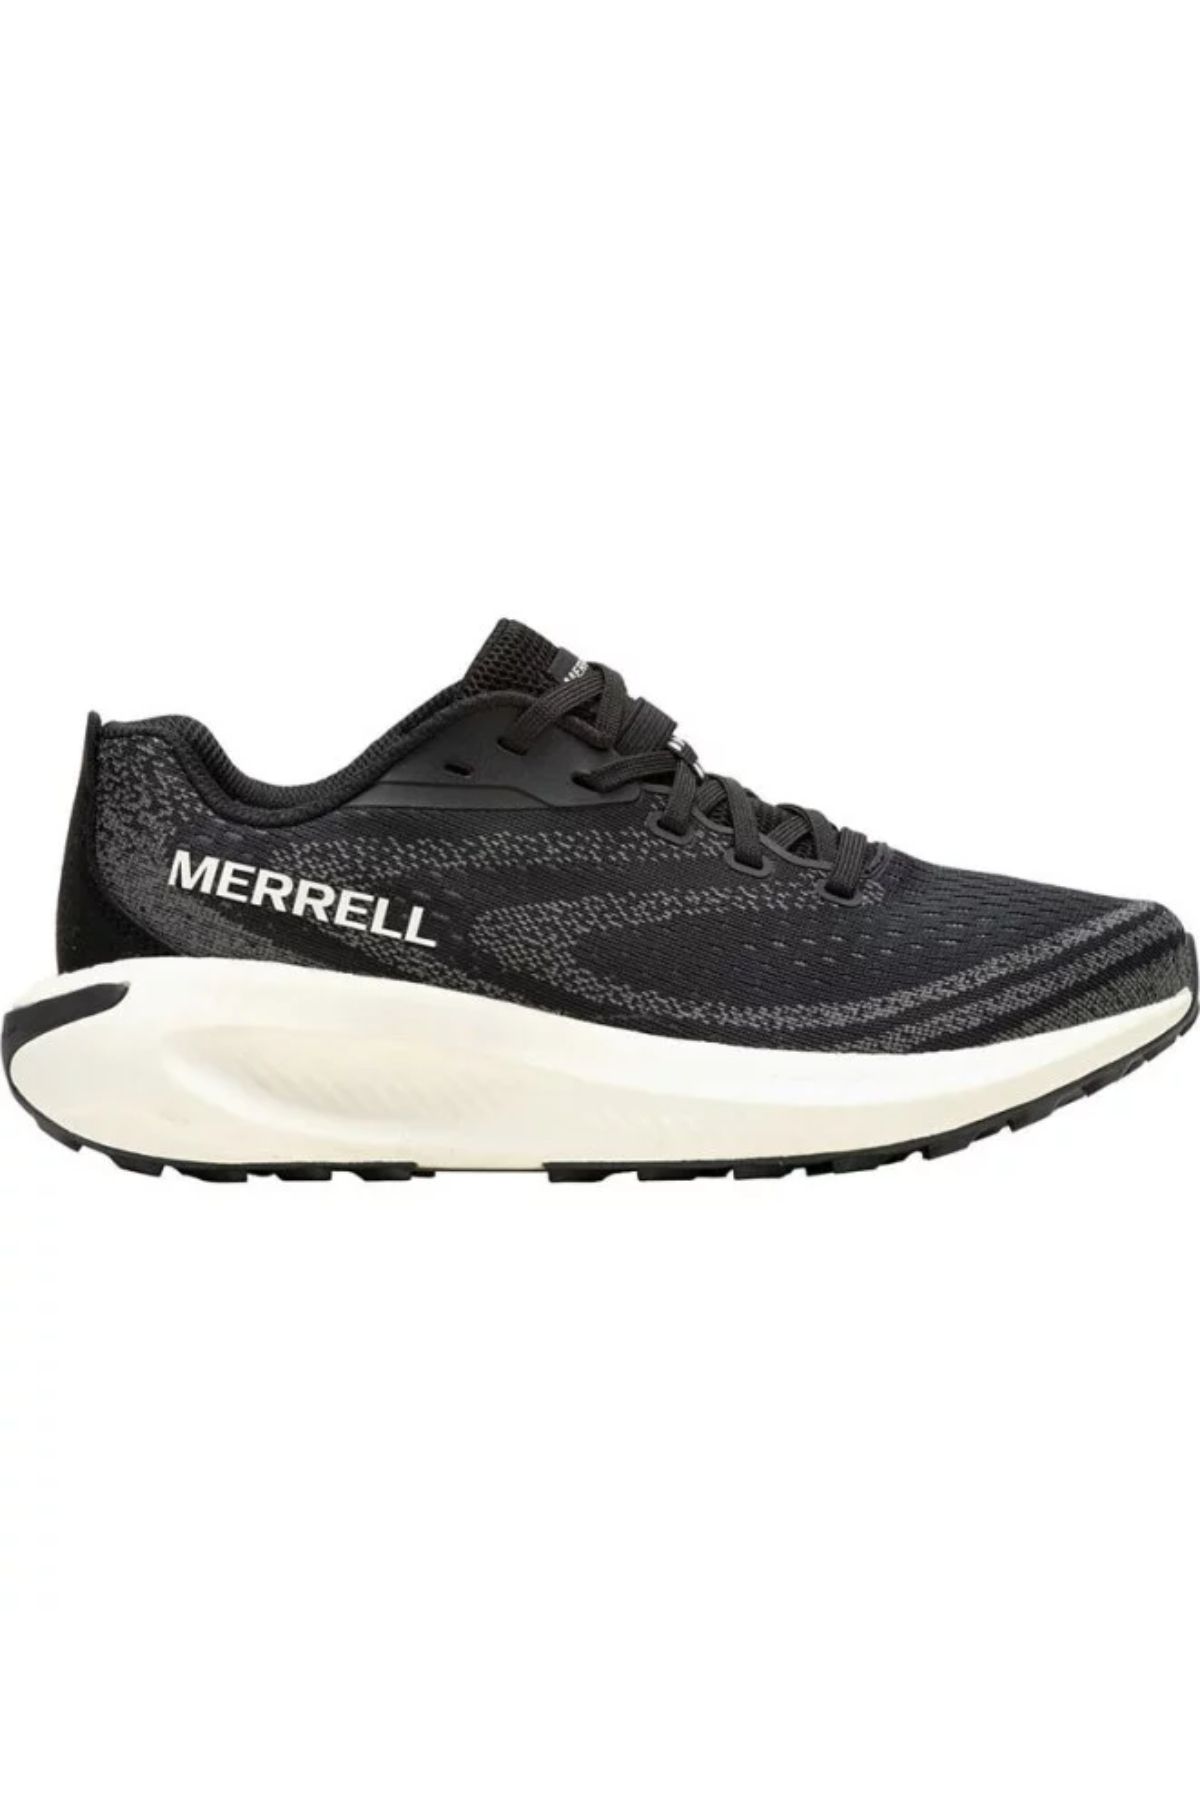 Merrell J068132 Morphlıte Kadın Spor Ayakkabısı Siyah Beyaz